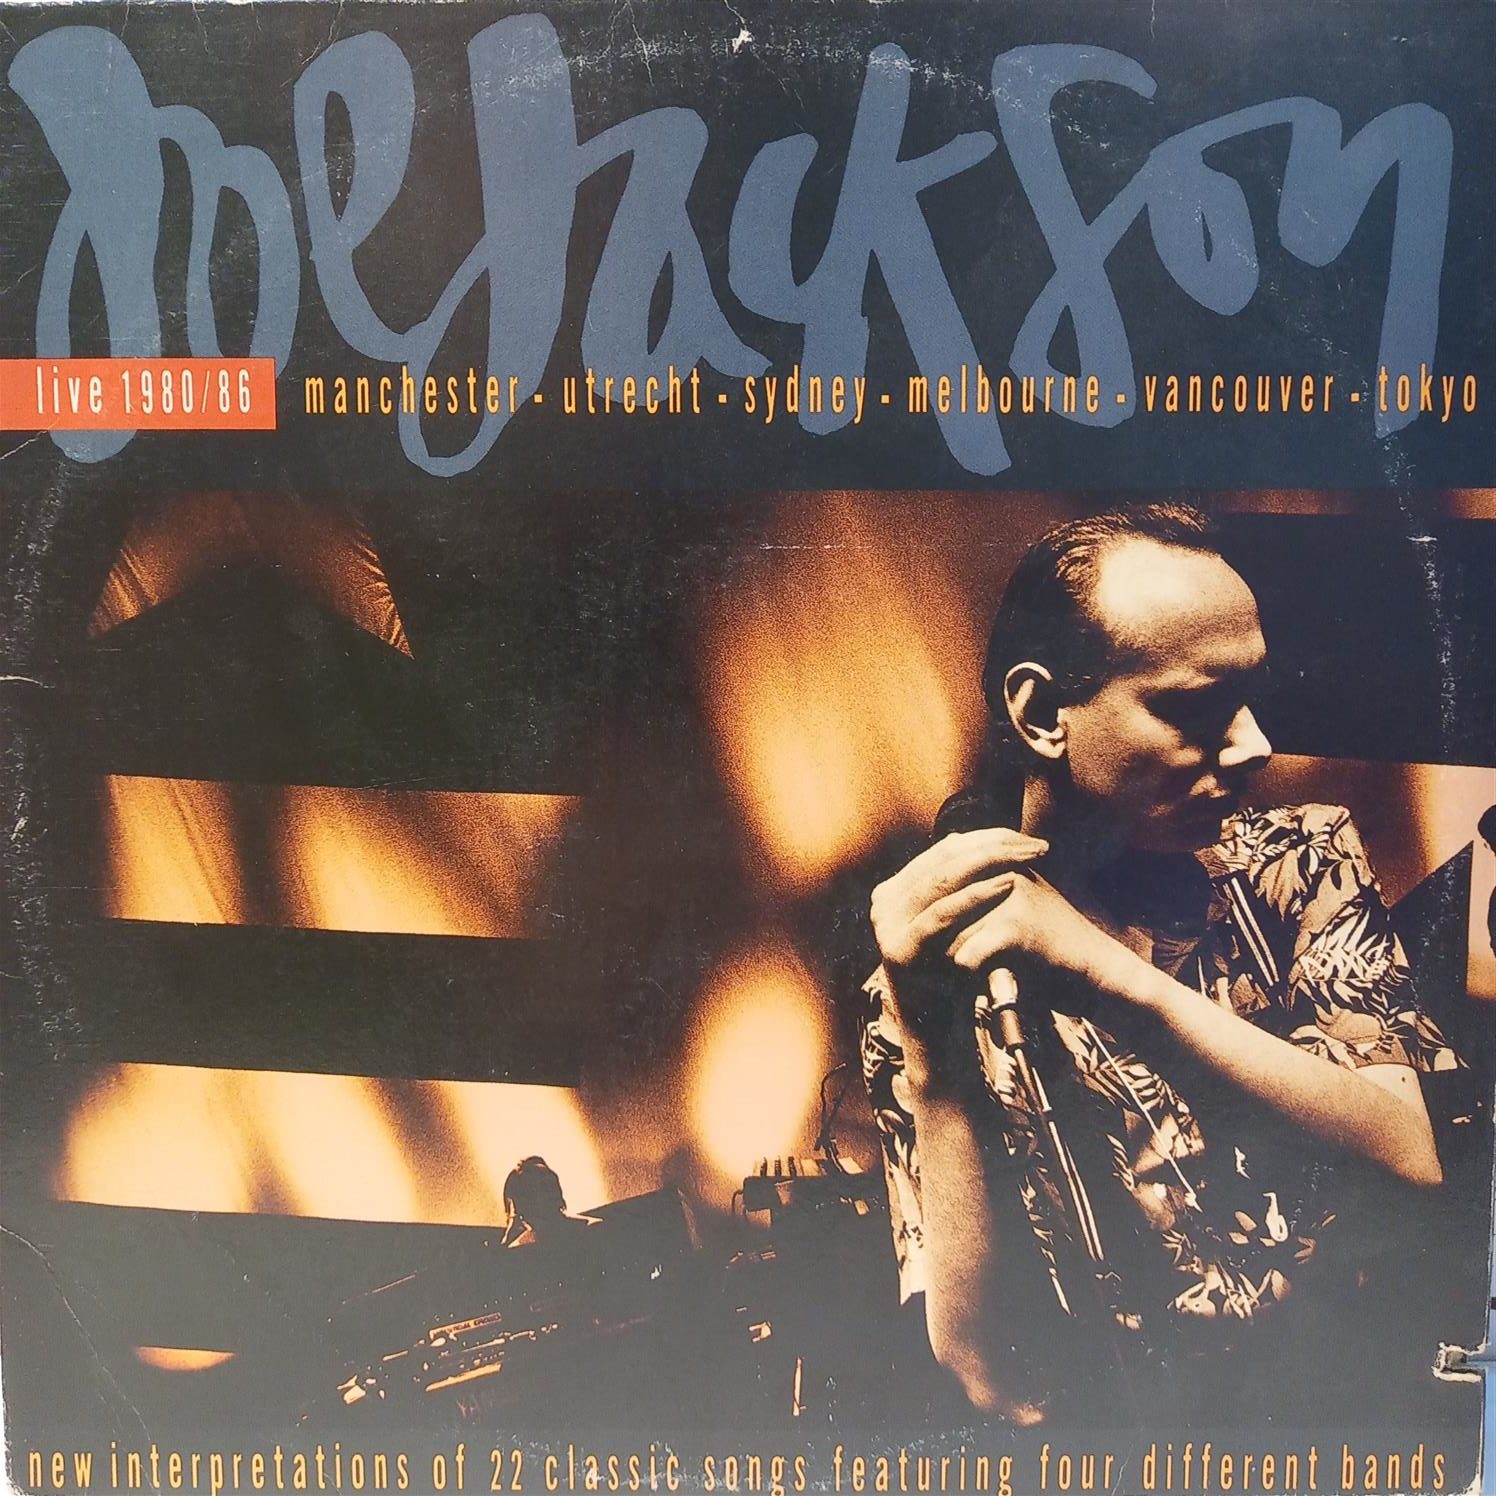 JOE JACKSON – LIVE 198086 ON